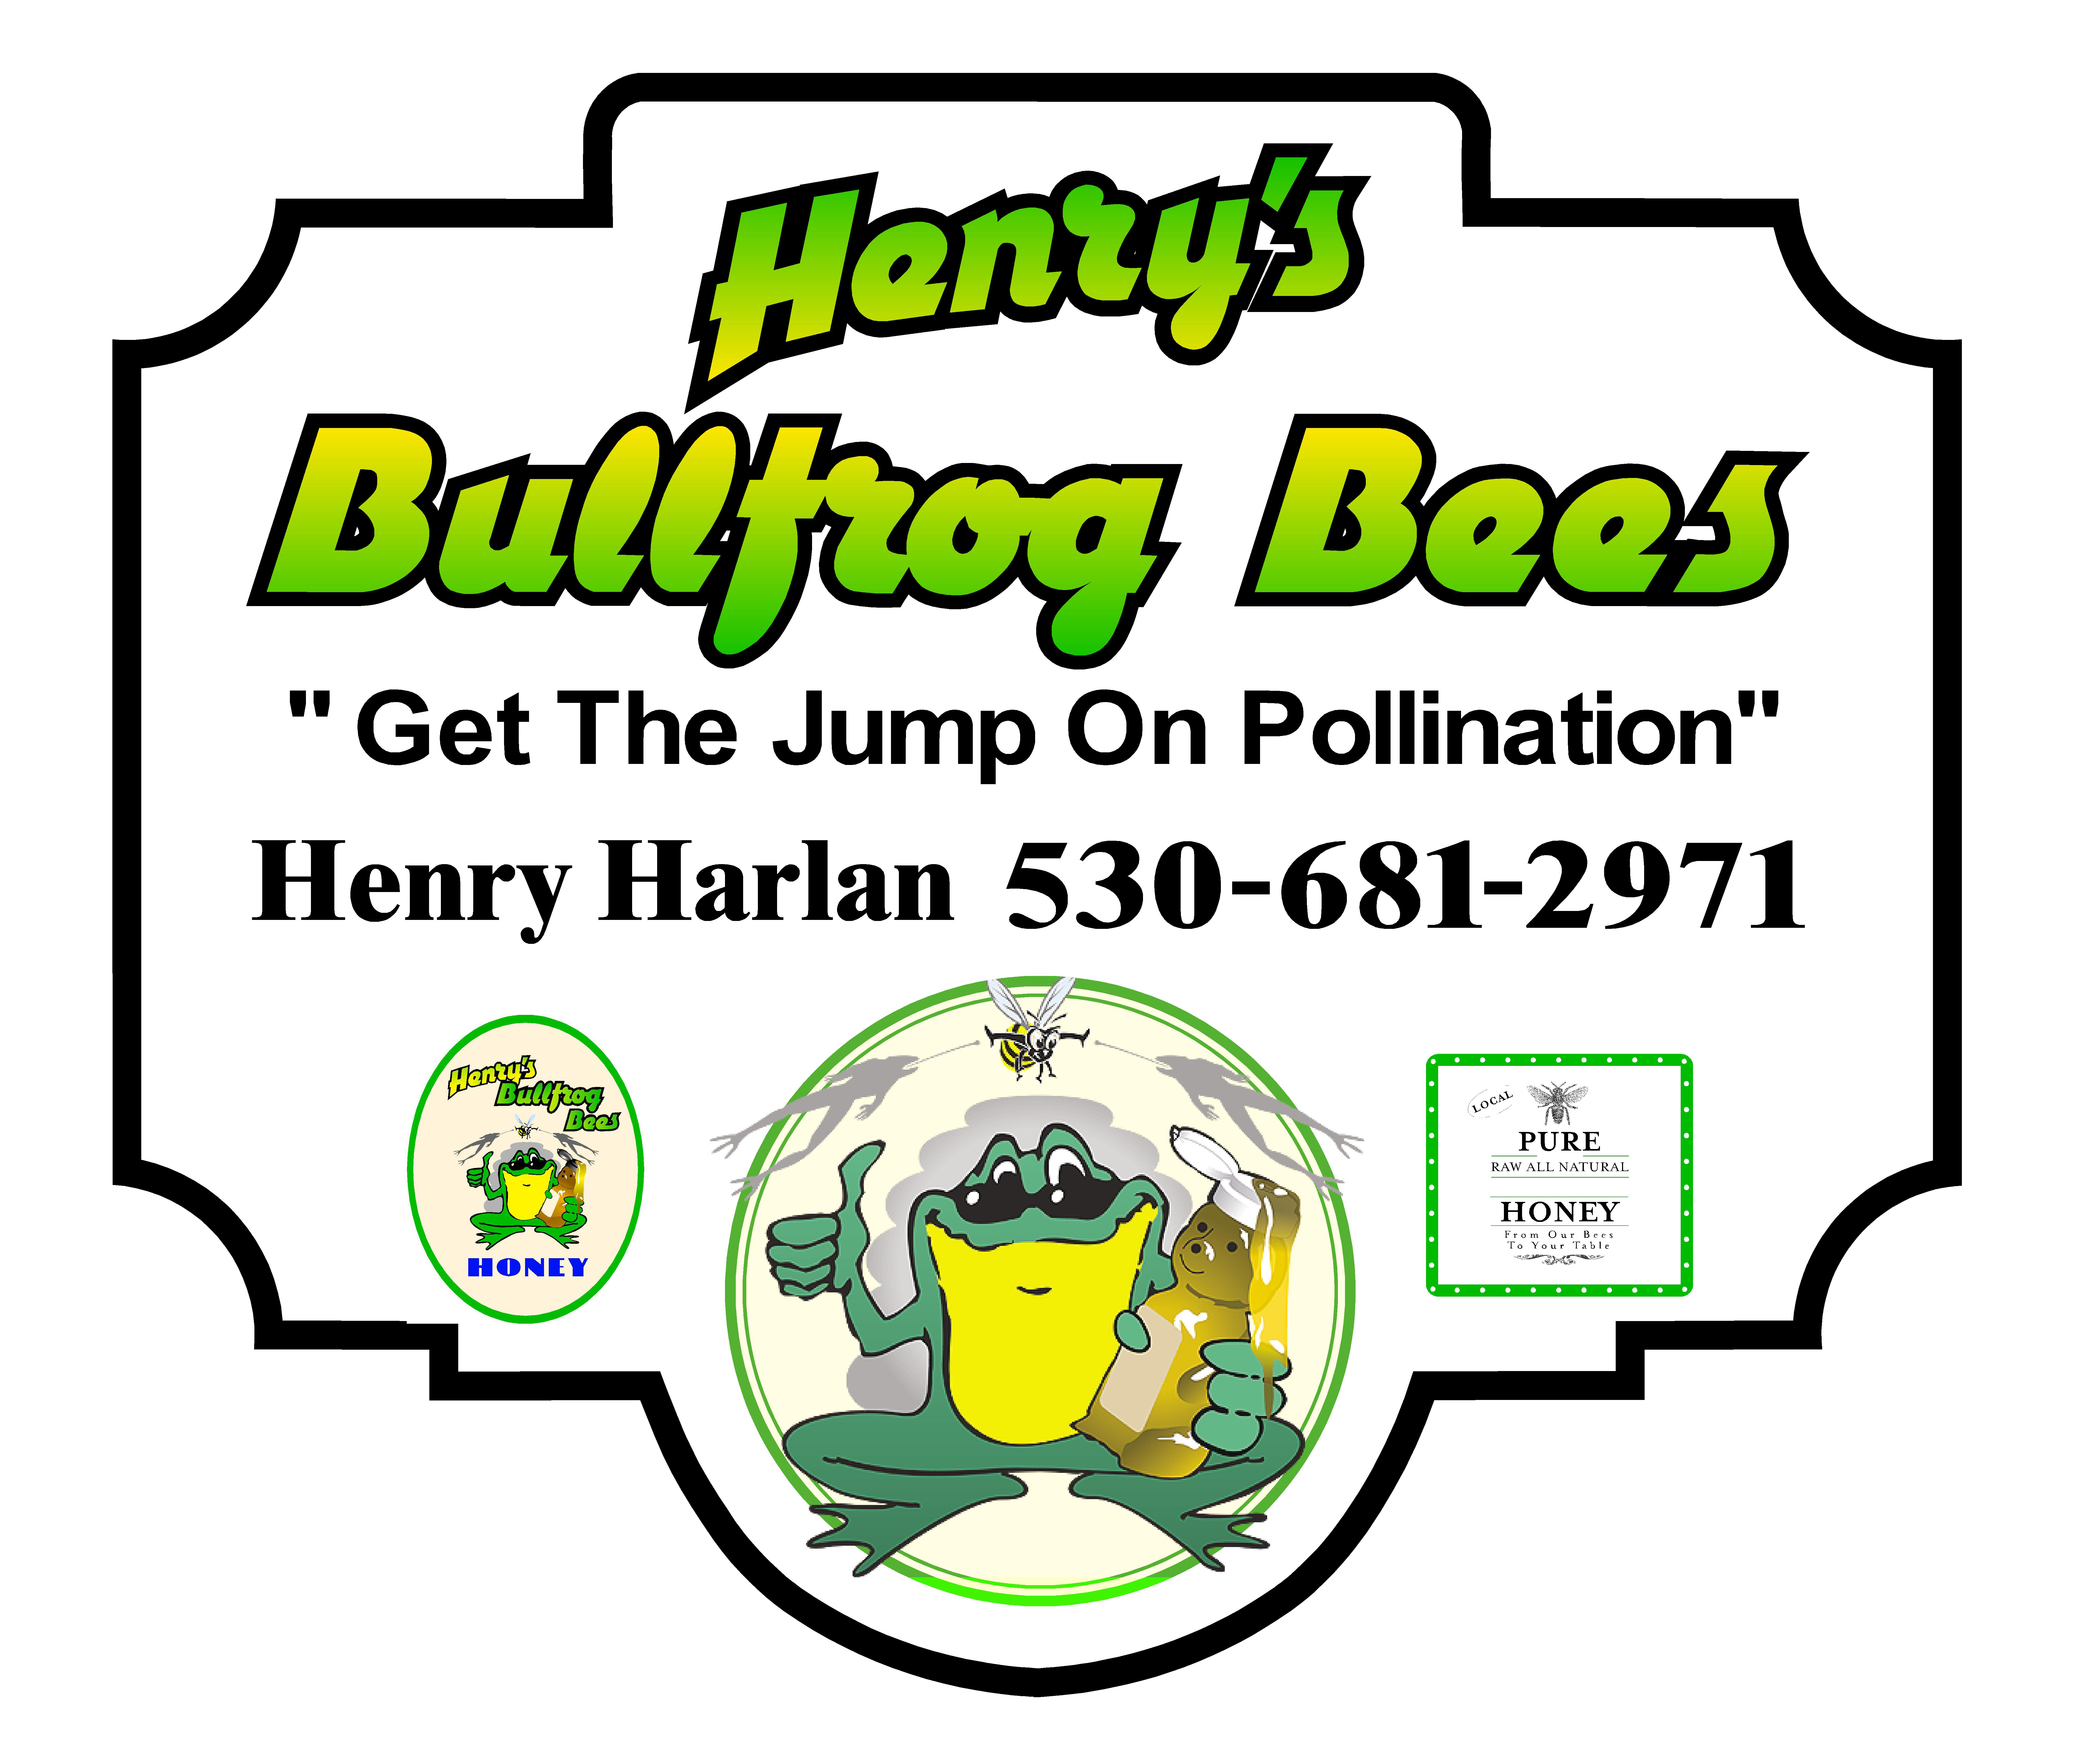 Henry’s Bullfrog Bees